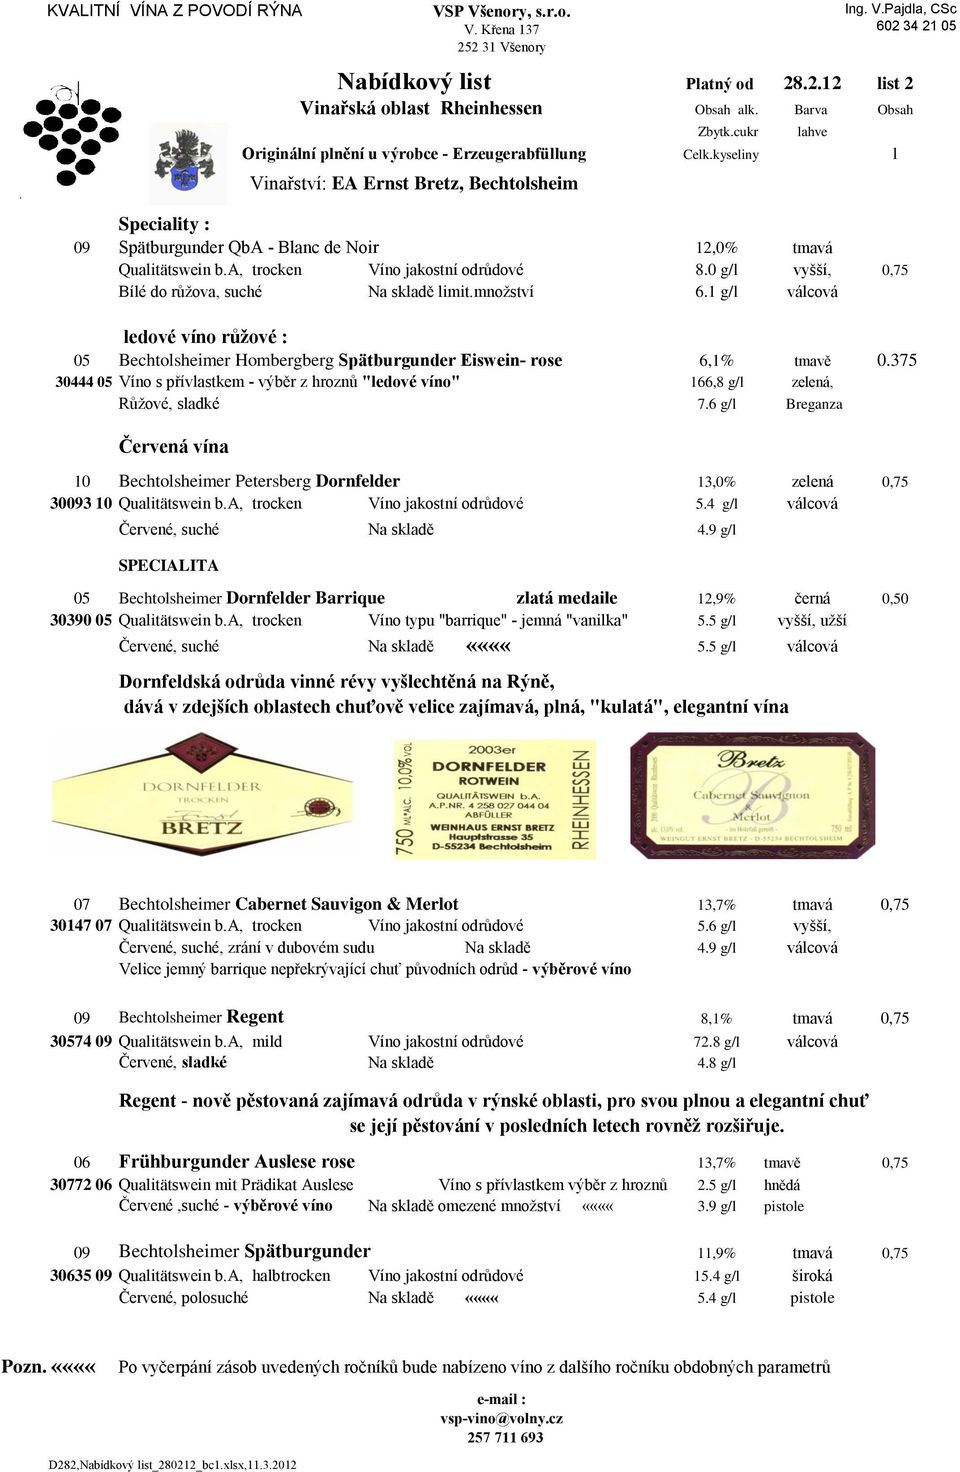 a, trocken Víno jakostní odrůdové 8.0 g/l vyšší, 0,75 Bílé do růžova, suché limit.množství 6.1 g/l válcová ledové víno růžové : 05 Bechtolsheimer Hombergberg Spätburgunder Eiswein- rose 6,1% tmavě 0.